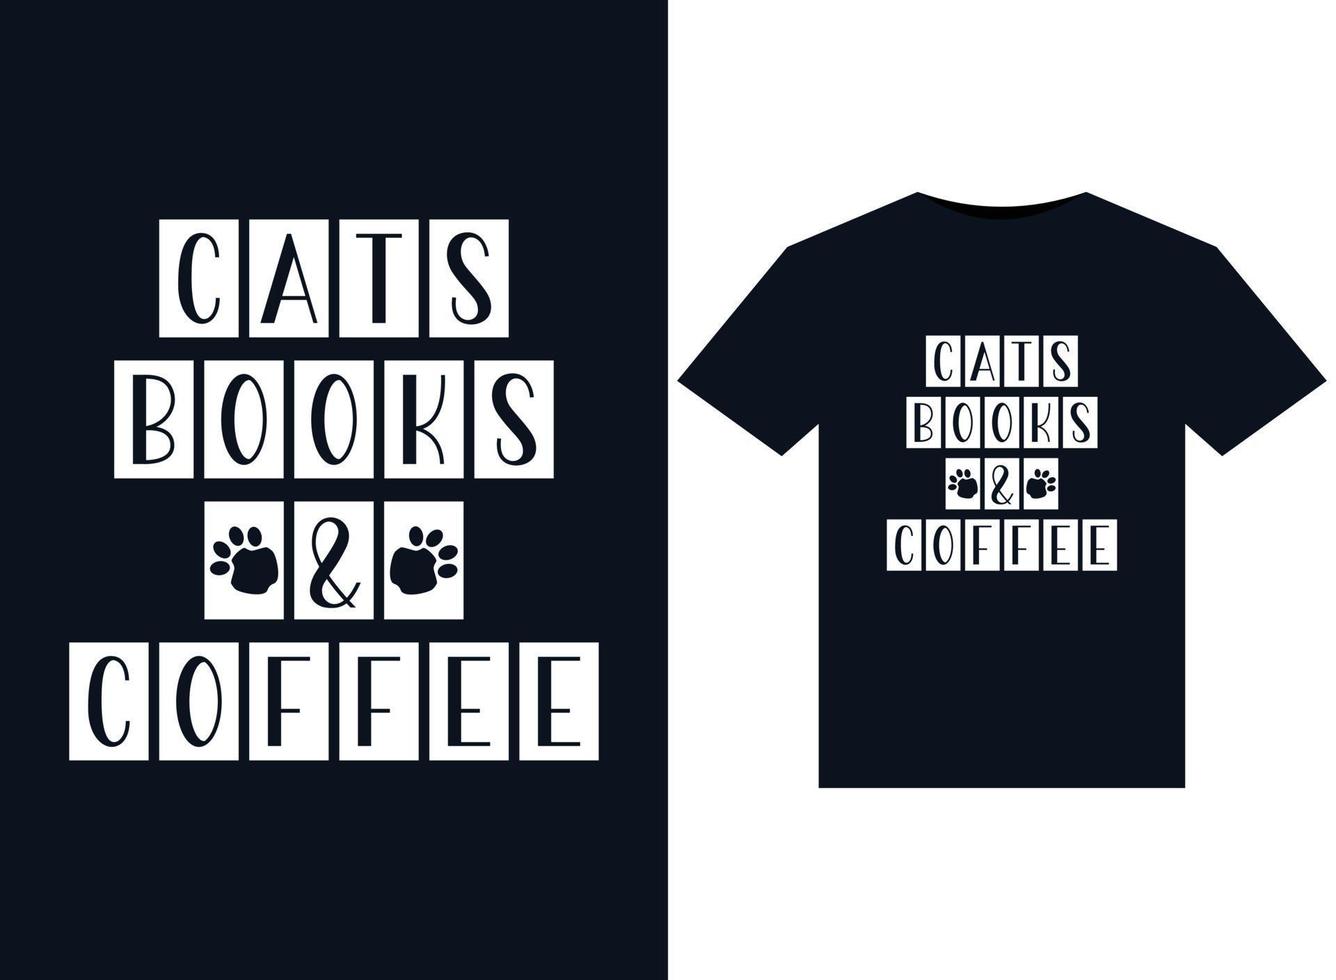 katten boeken en koffie illustraties voor drukklare t-shirts ontwerp vector